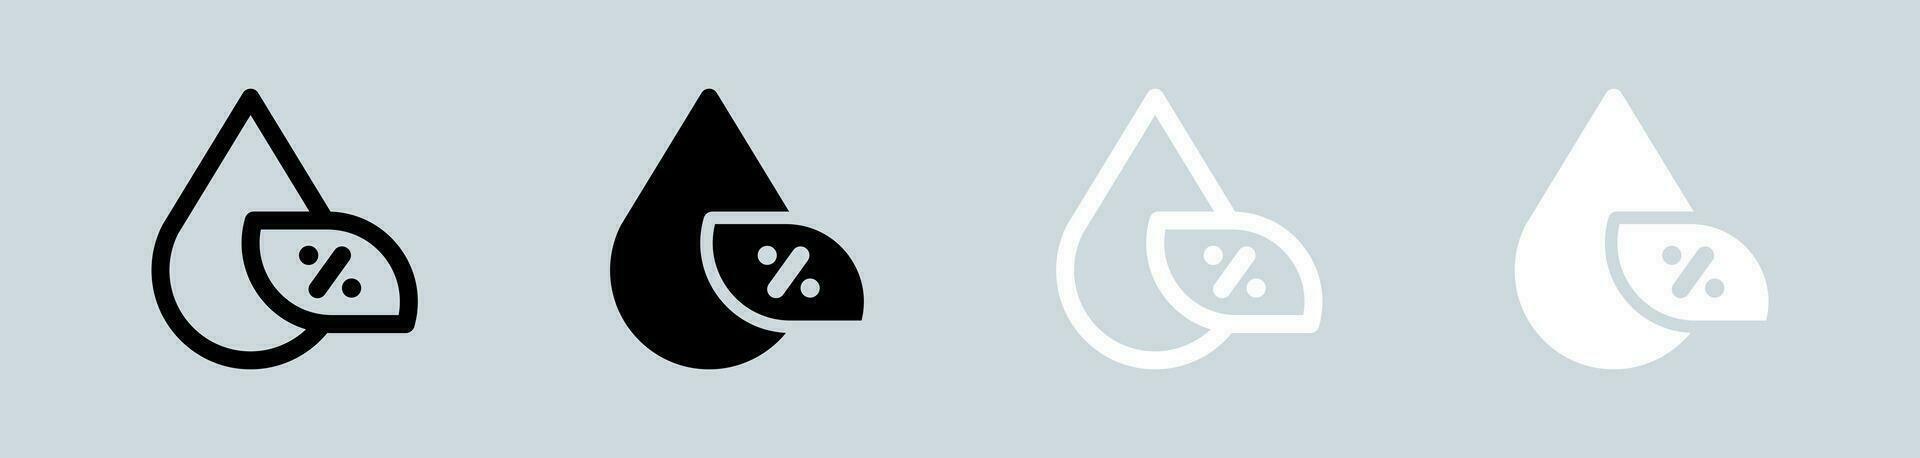 Feuchtigkeit Symbol einstellen im schwarz und Weiß. Wasser Zeichen Vektor Illustration.